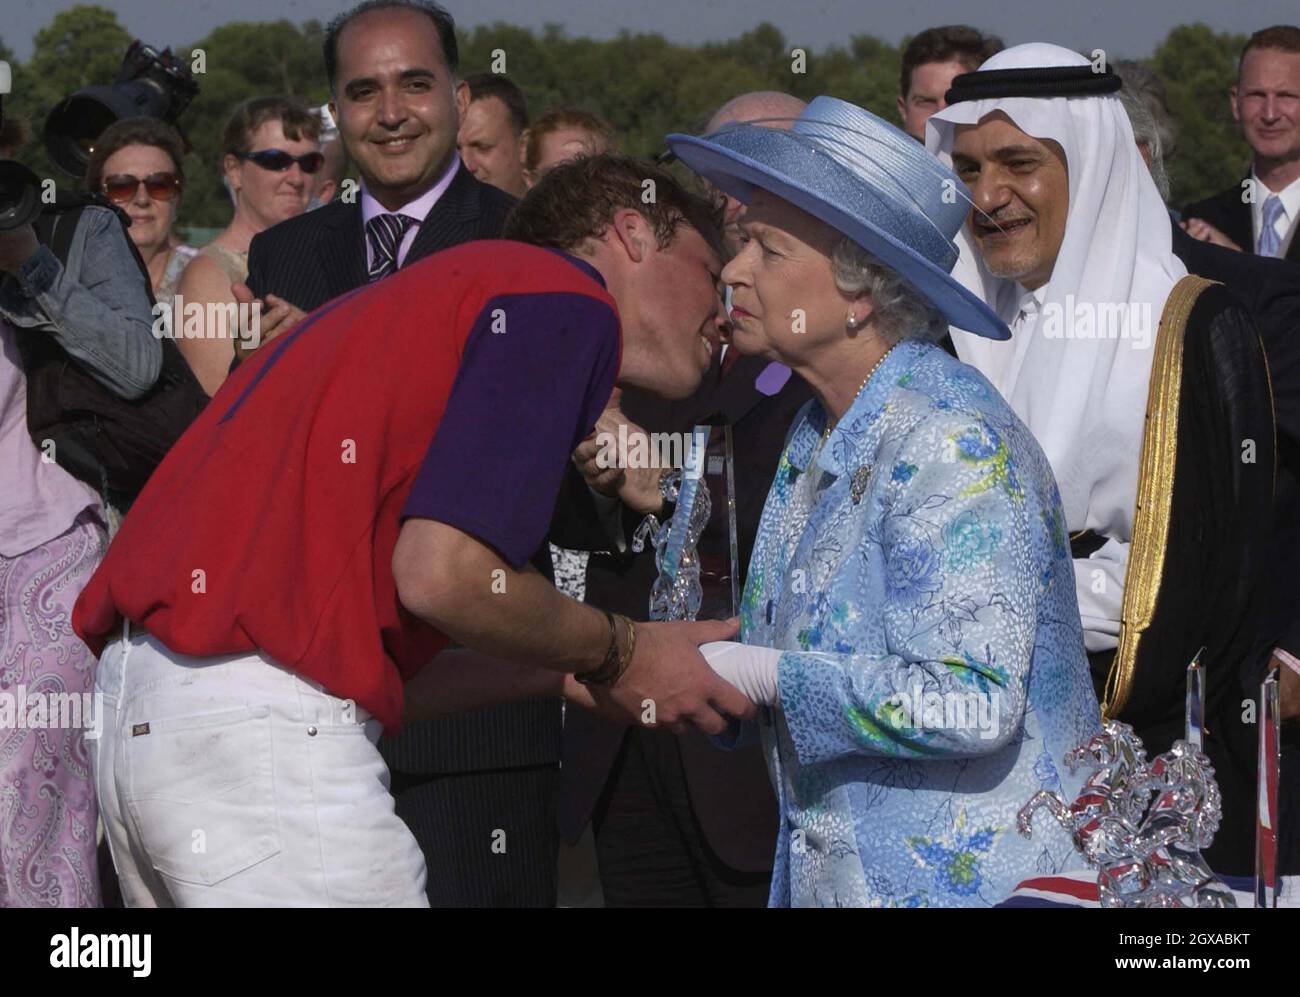 La regina Elisabetta 11 bacia il nipote Principe William ad una partita di  polo al Windsor Great Park dopo il secondo giorno di Royal Ascot  all'ippodromo Ascot nel Berkshire, Inghilterra. L'evento è